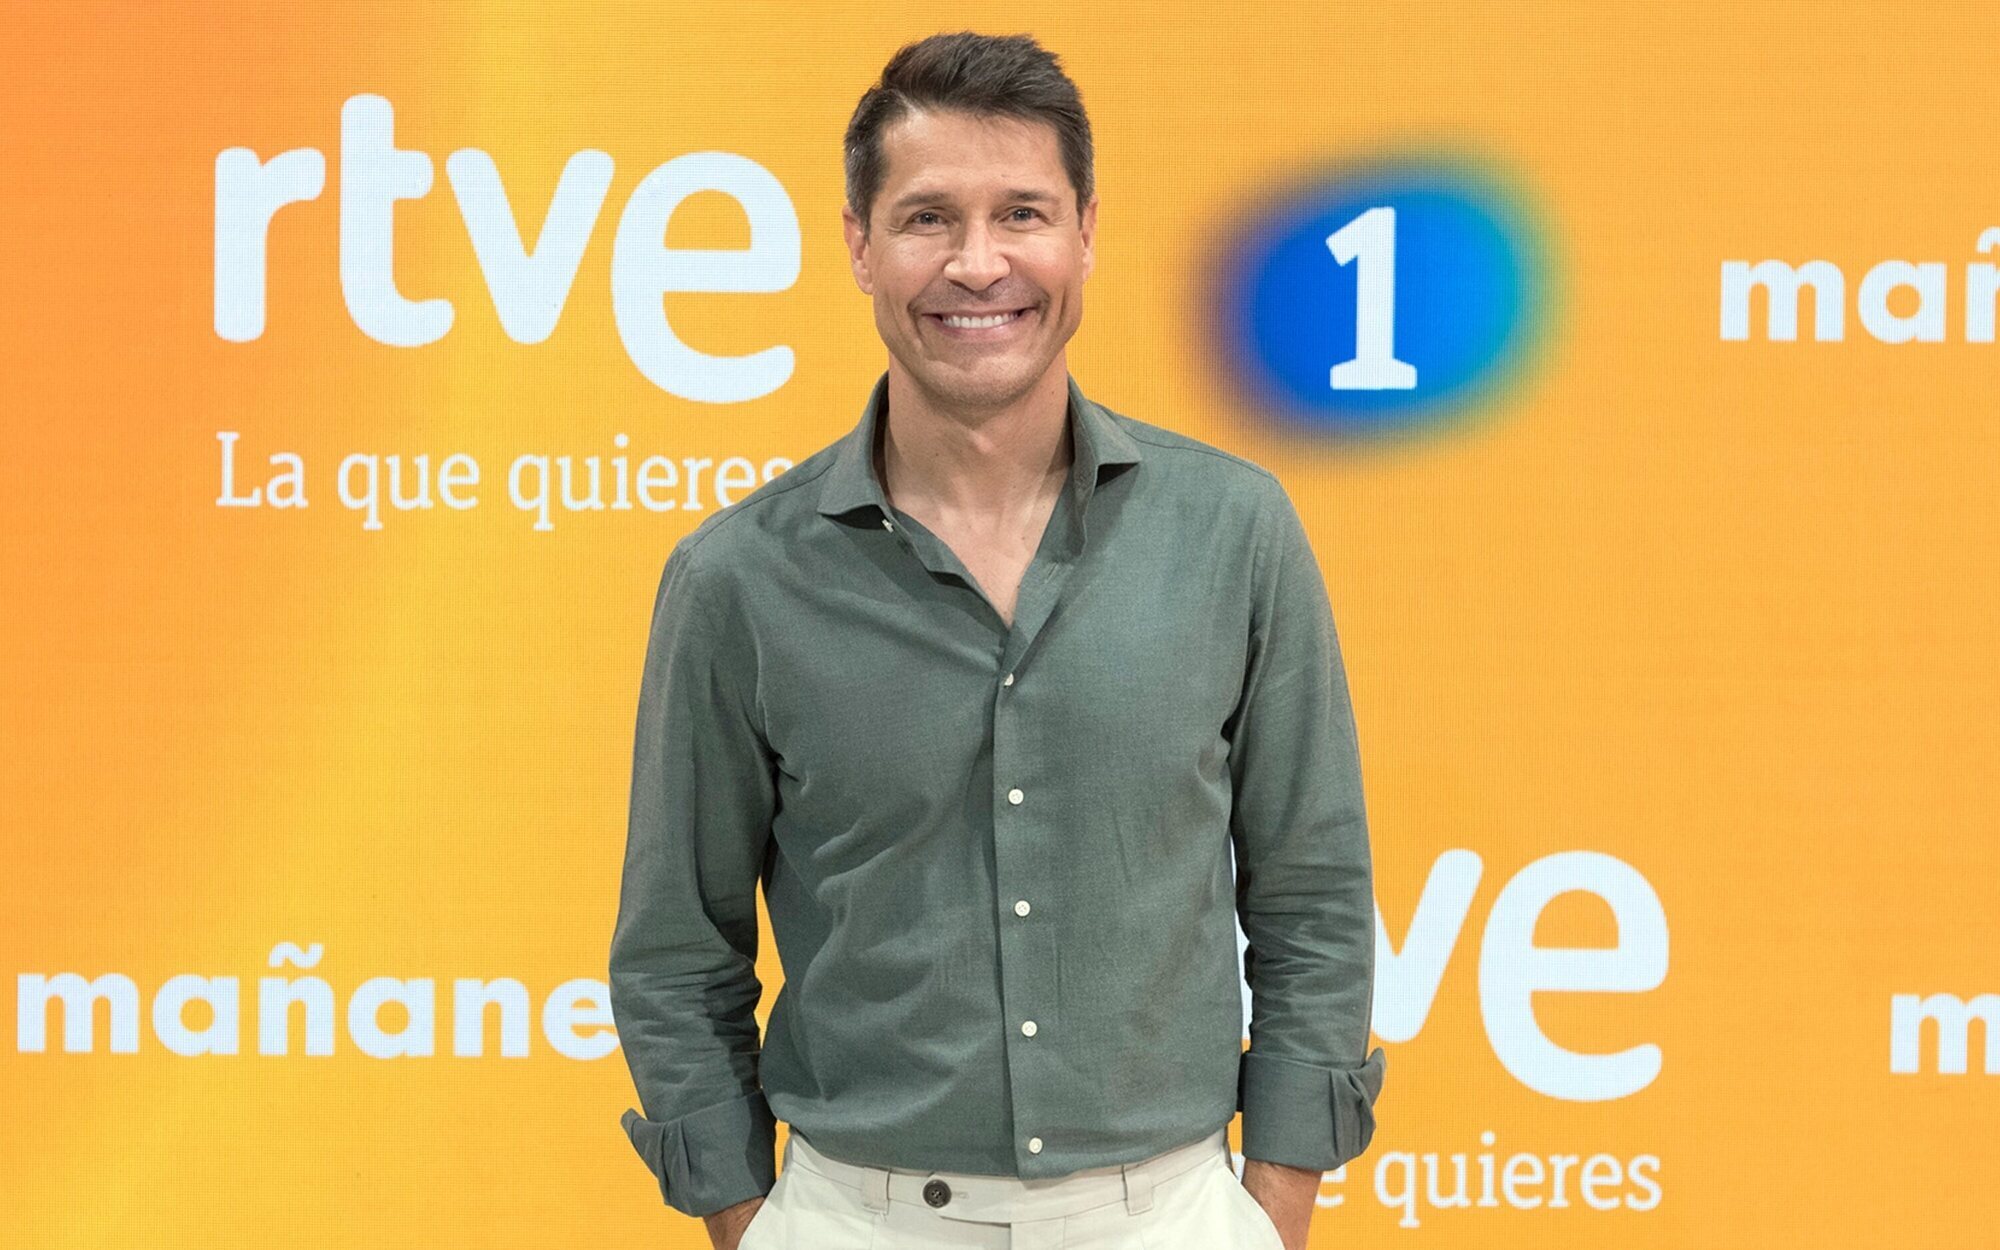 Jaime Cantizano dejará 'Mañaneros' tras intercambiar su programa de Onda Cero con Julia Otero